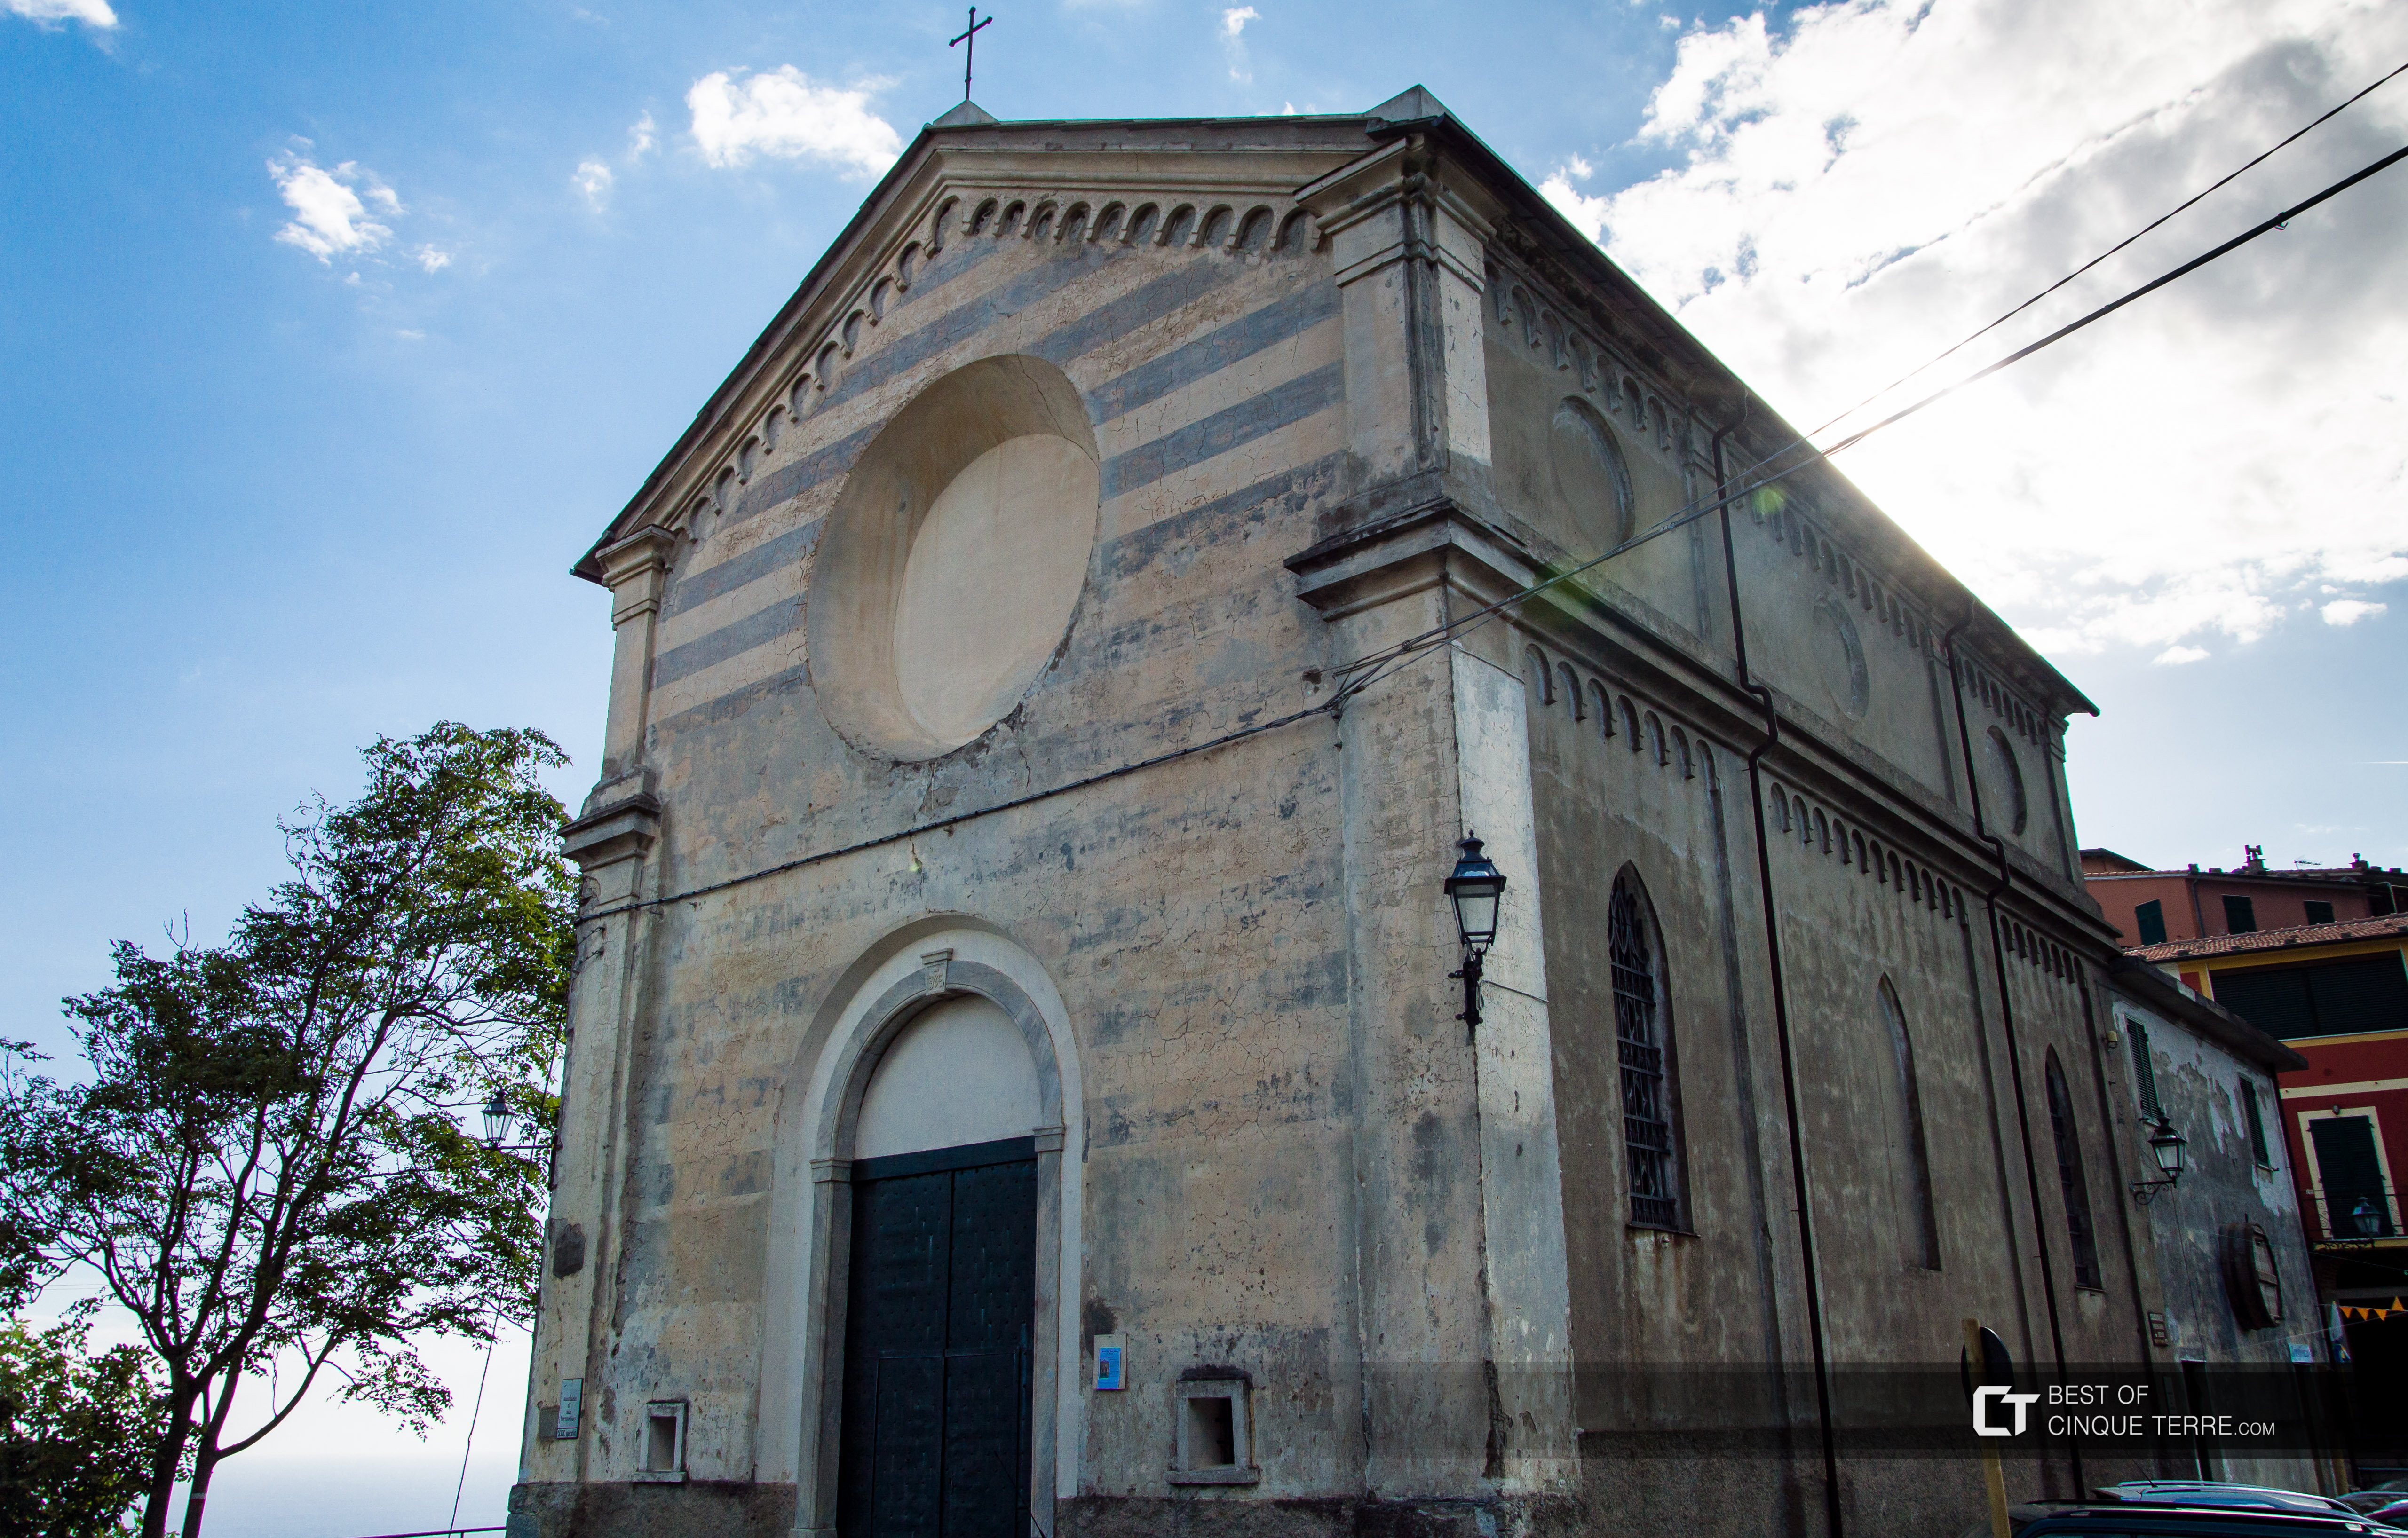 Die Wallfahrtskirche Nostra Signora delle Grazie in San Bernardino, Vernazza, Cinque Terre, Italien